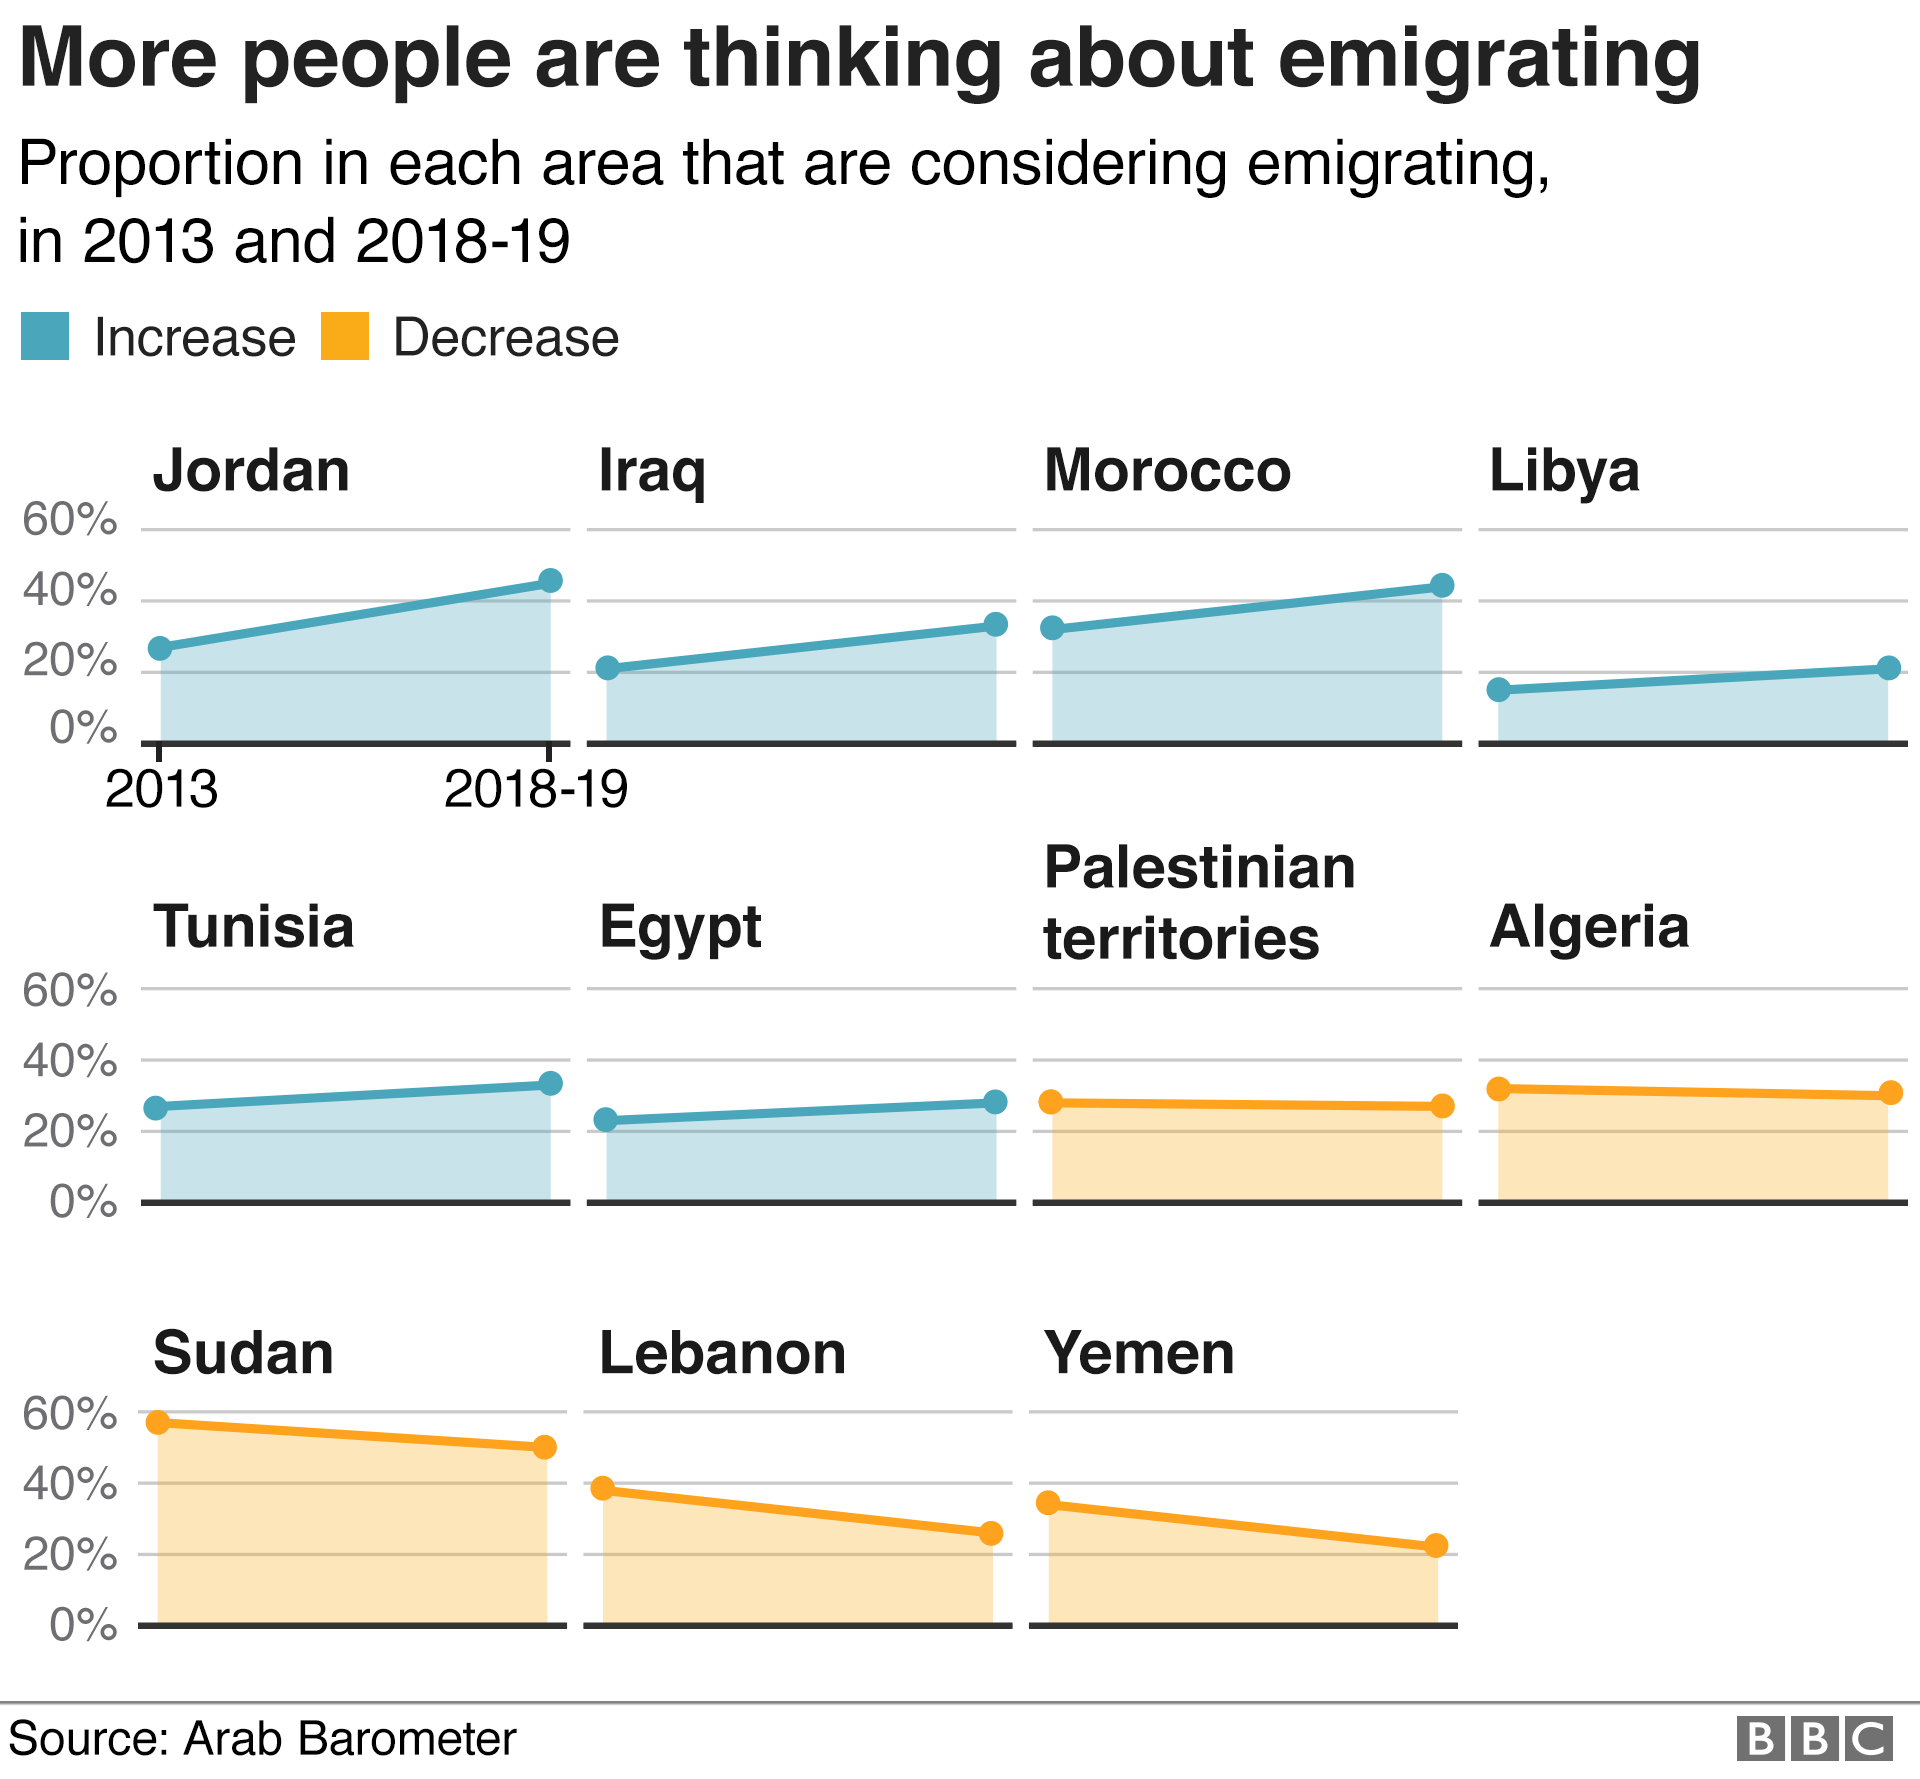 График, показывающий, что доля людей, которые задумывались об эмиграции, выросла в 6 из 11 опрошенных мест по сравнению с 2013 годом.